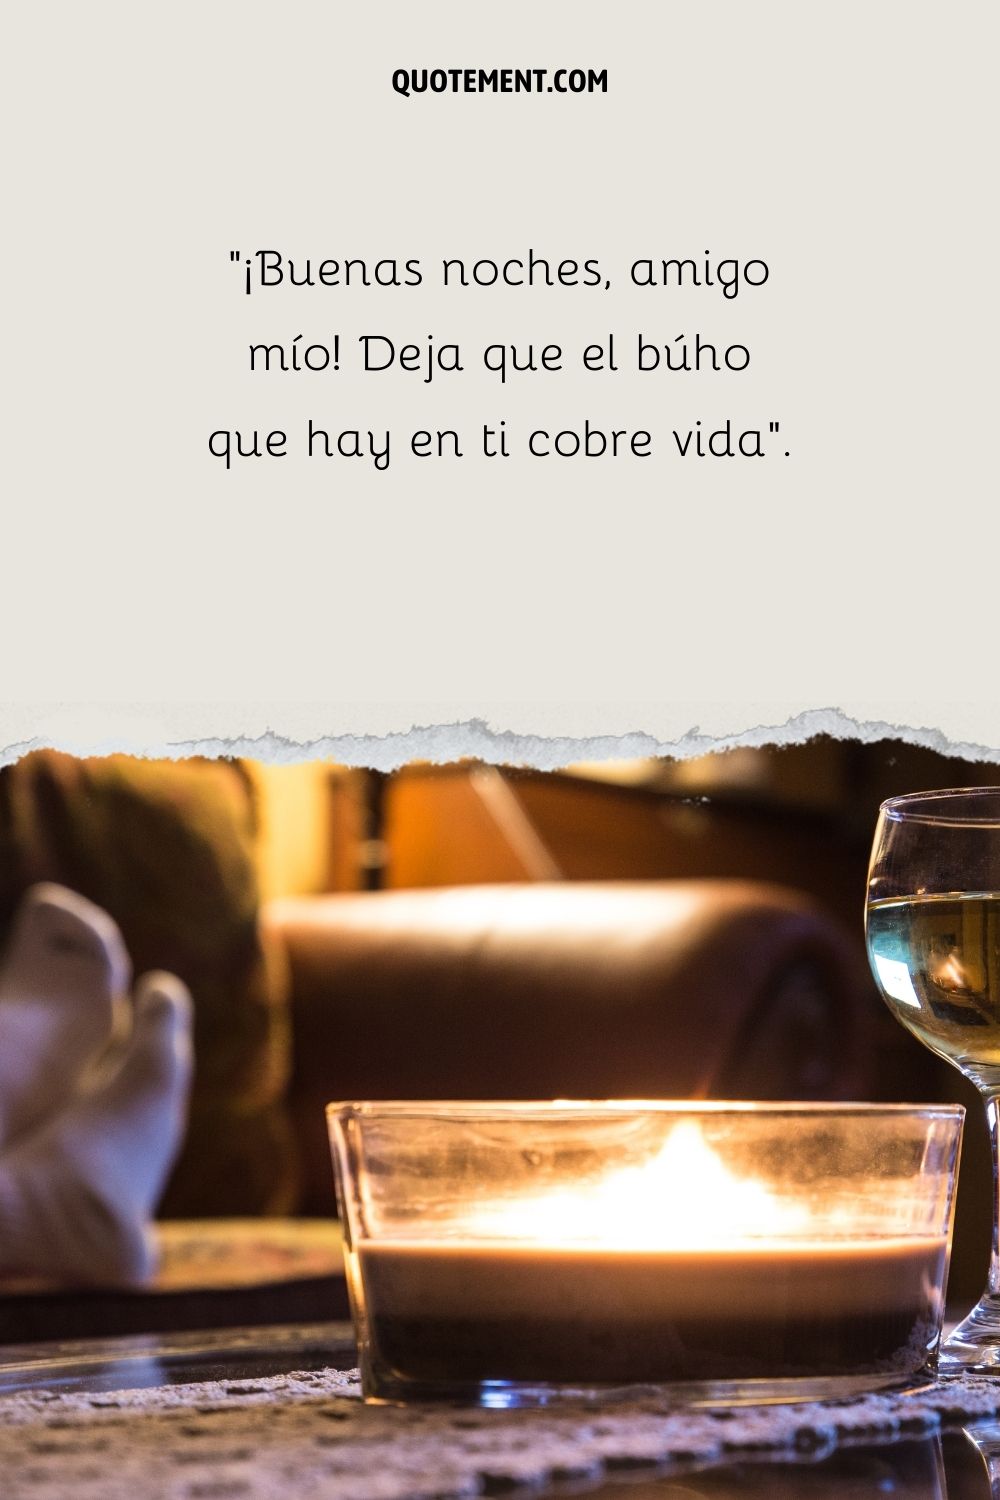 Una vela y una copa de vino sobre una mesa, con una persona al fondo difuminada